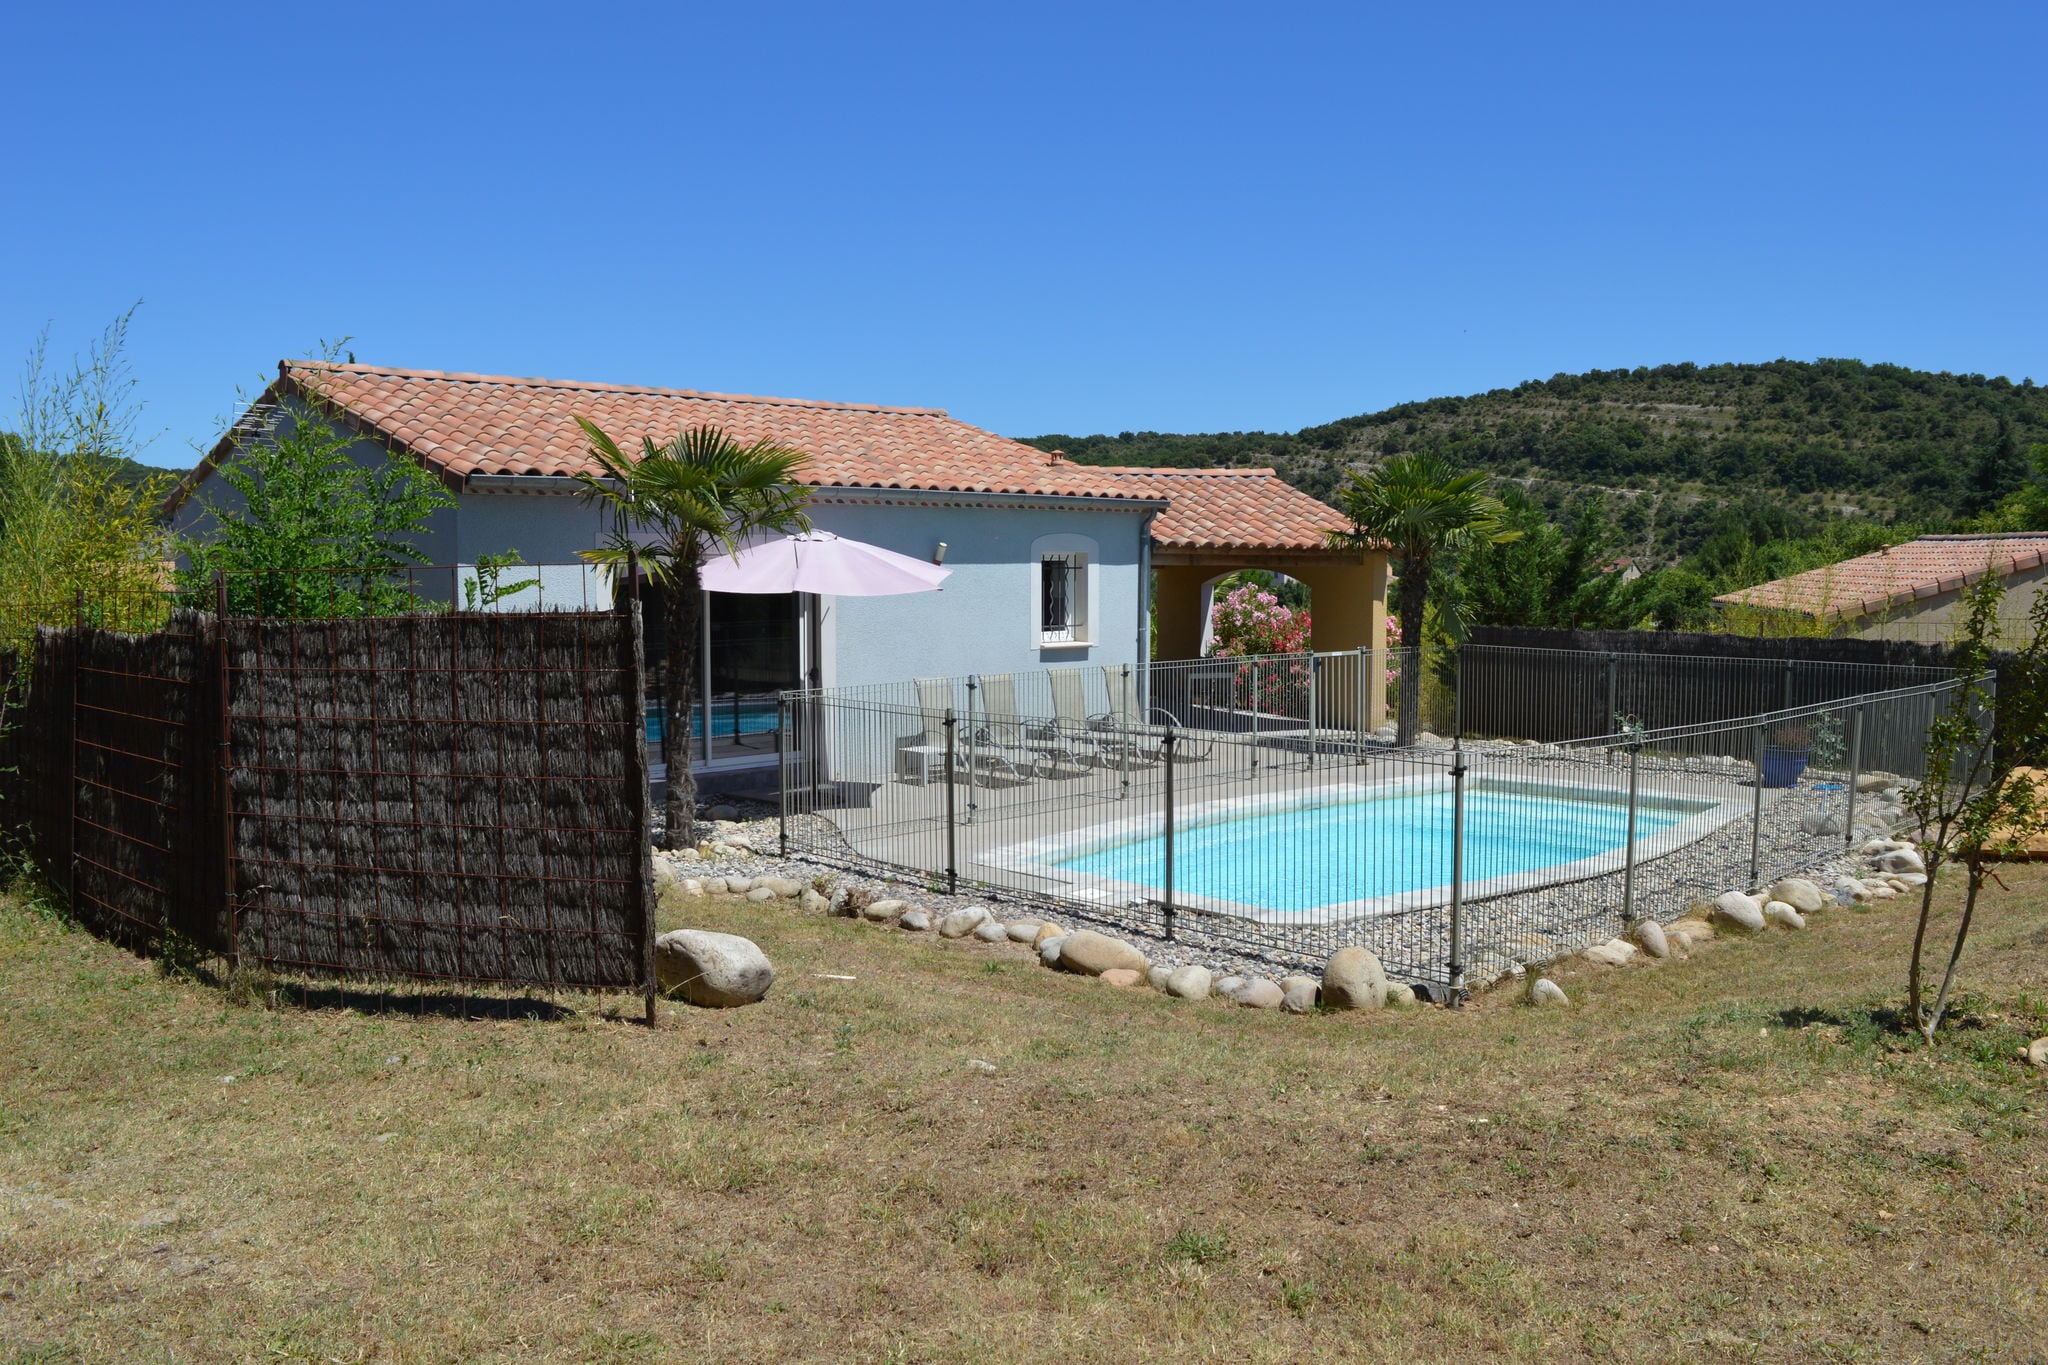 Charmante villa met privézwembad nabij de Ardèche-rivier